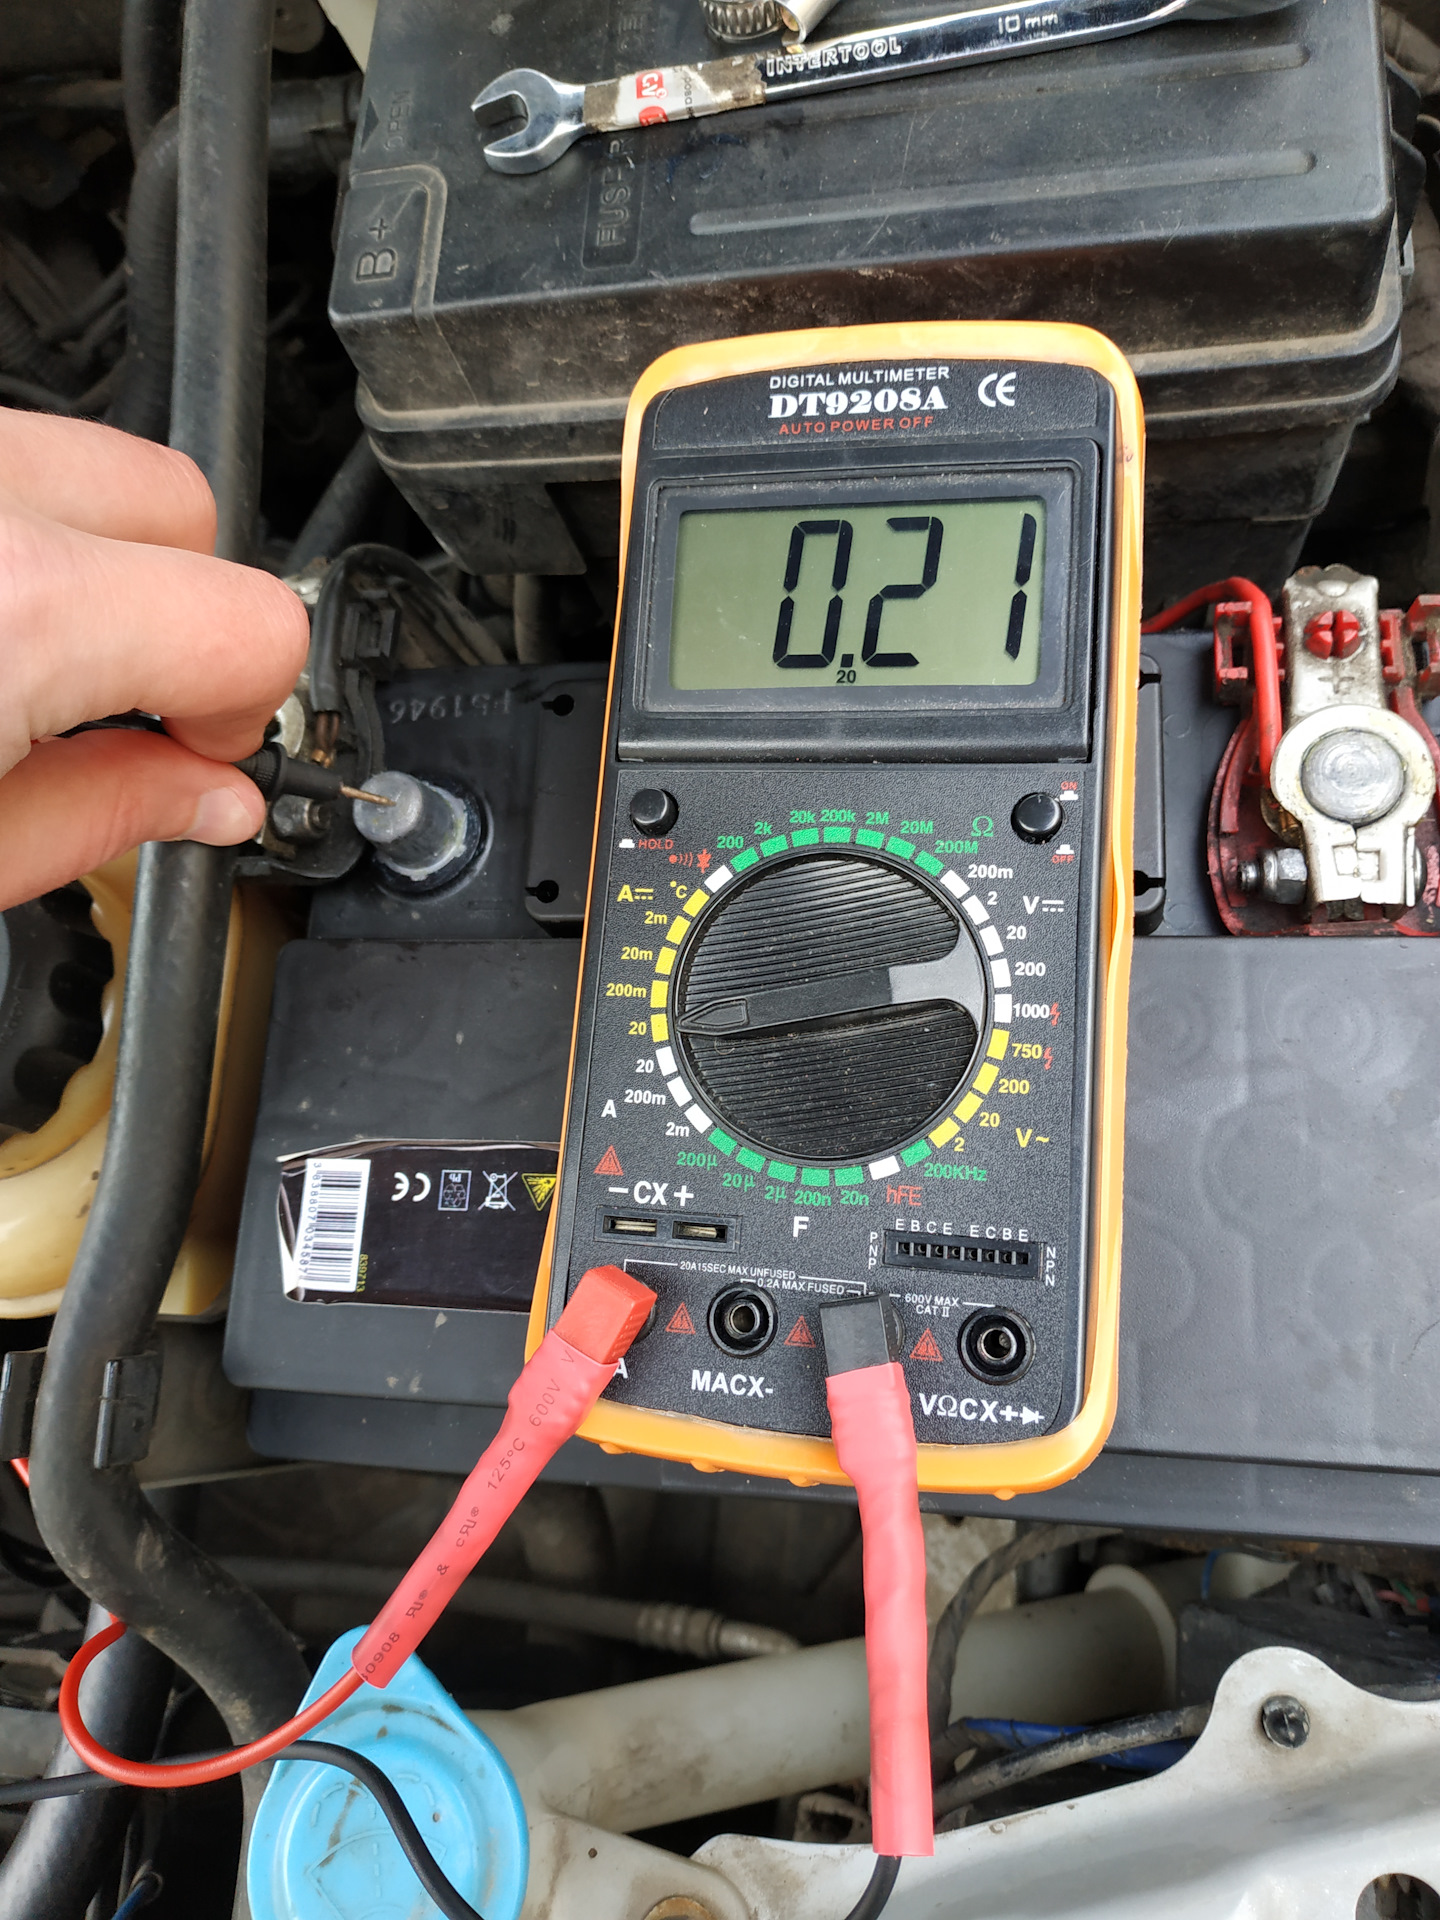 Проверить утечку тока на ваз. Измерение напряжения АКБ мультиметром dt831. Мультиметр измерение напряжения 12 вольт. Измеритель утечки напряжения АКБ авто. Ток утечки тестером на АКБ.